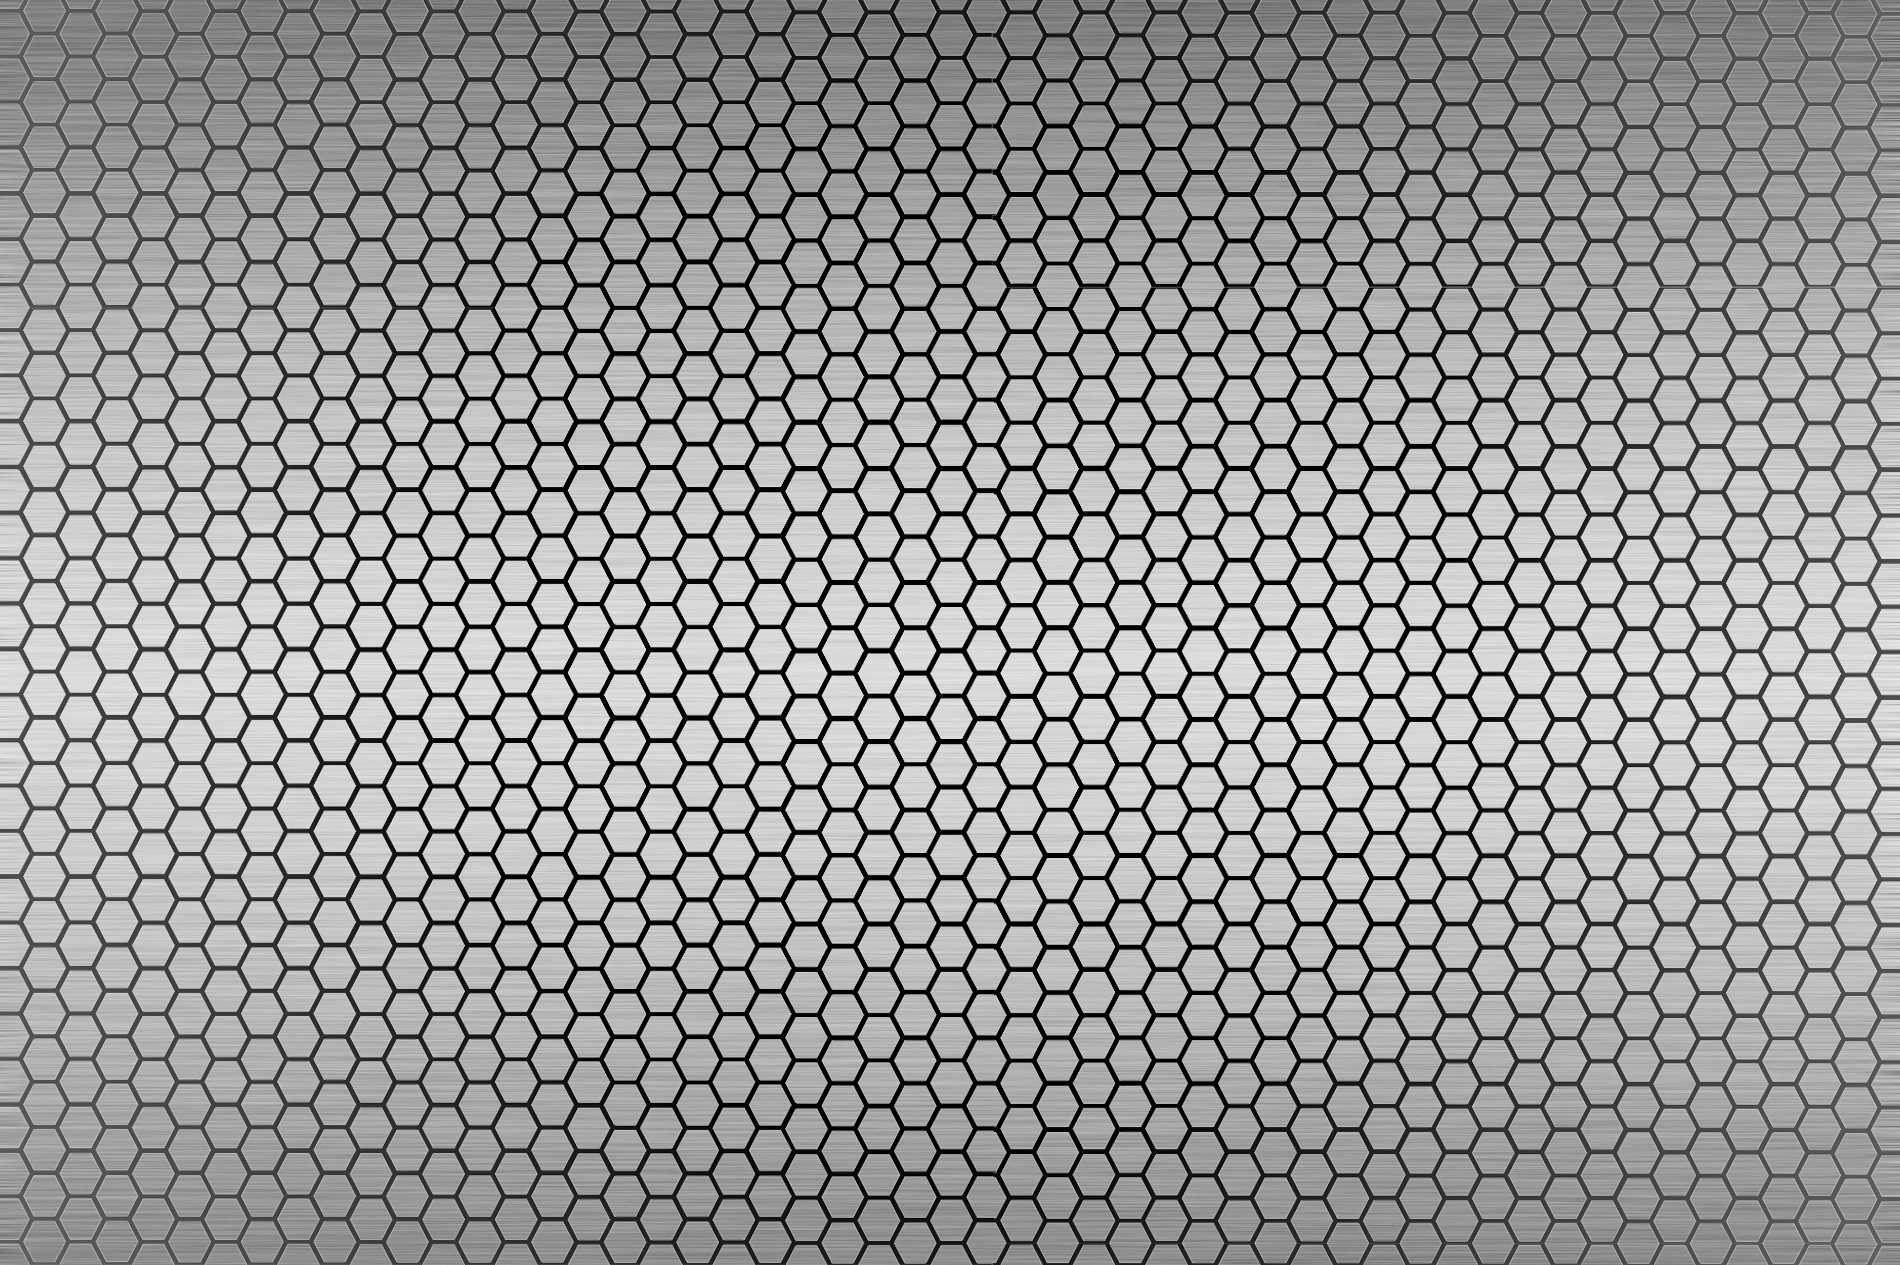 Nano Carbon Type by Miatari (5).jpg